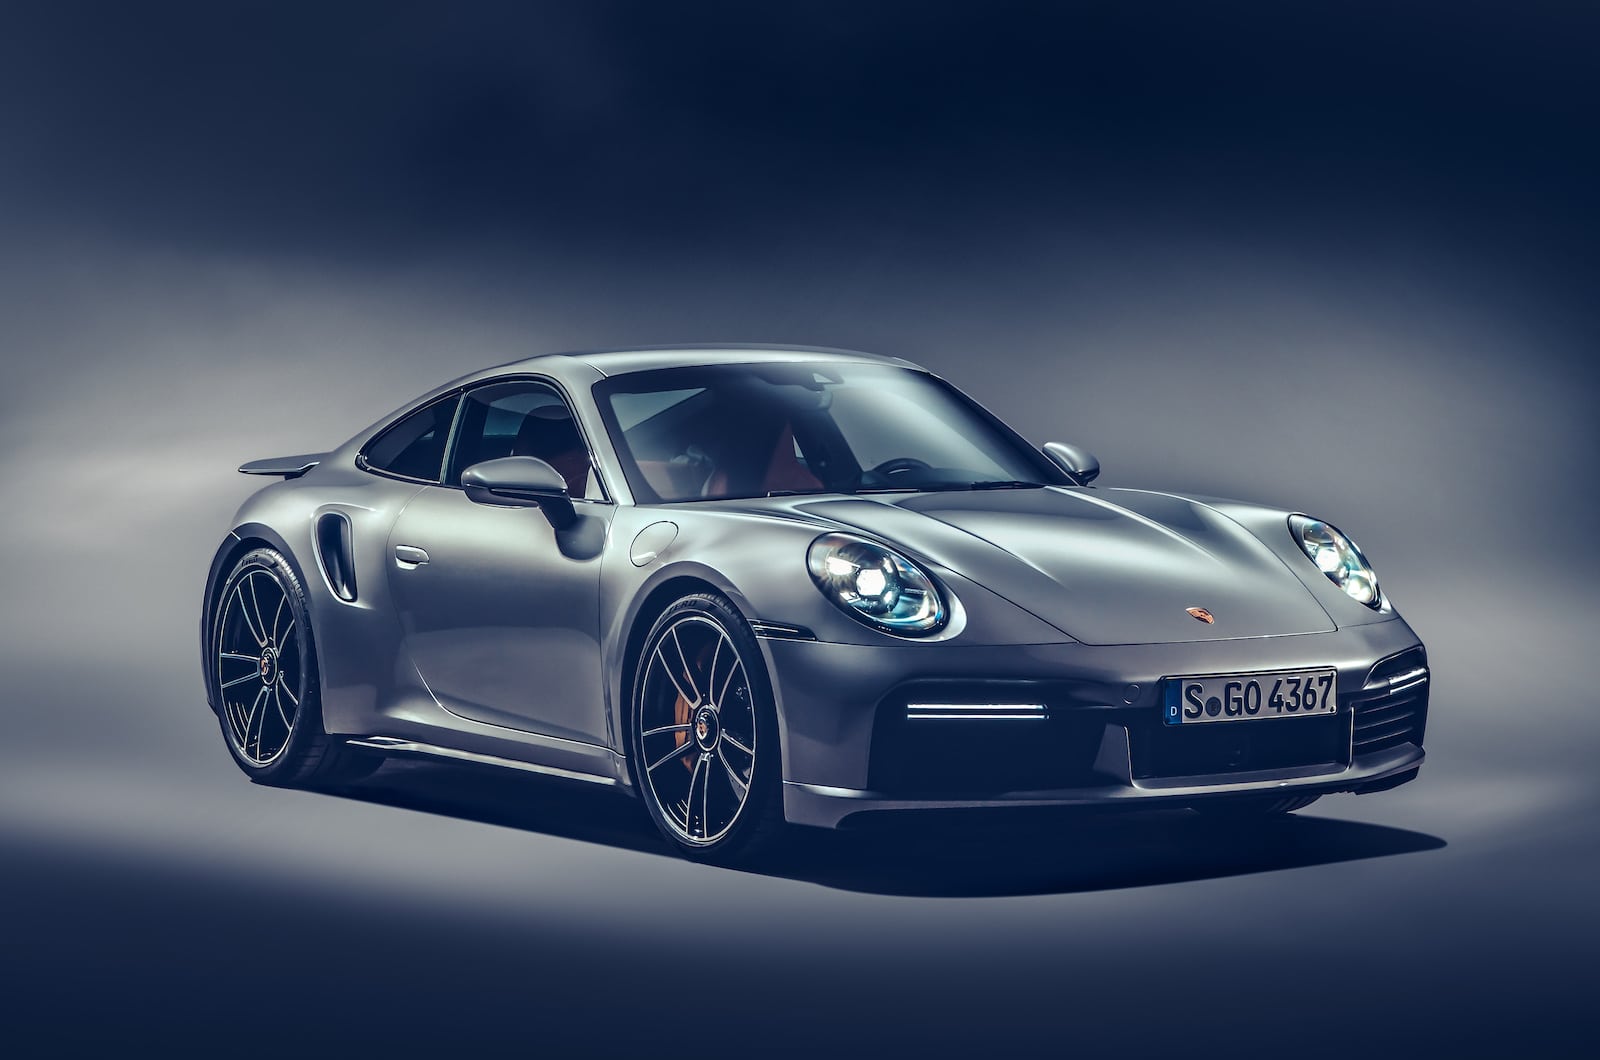 Porsche Parades Out Next-Generation 911 Turbo S - The Detroit Bureau